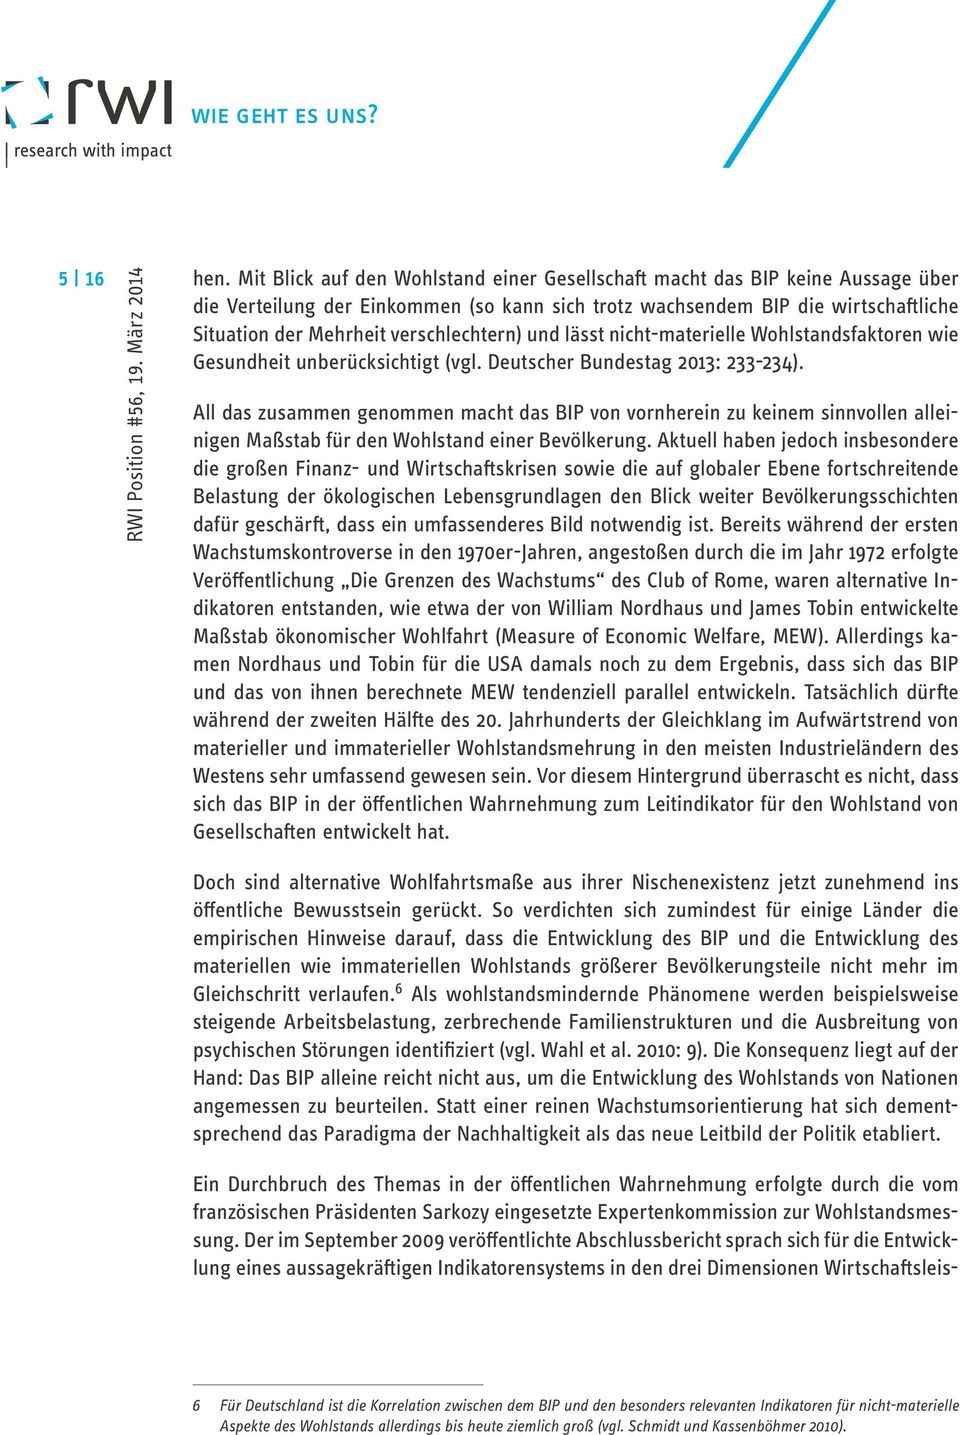 verschlechtern) und lässt nicht-materielle Wohlstandsfaktoren wie Gesundheit unberücksichtigt (vgl. Deutscher Bundestag 2013: 233-234).